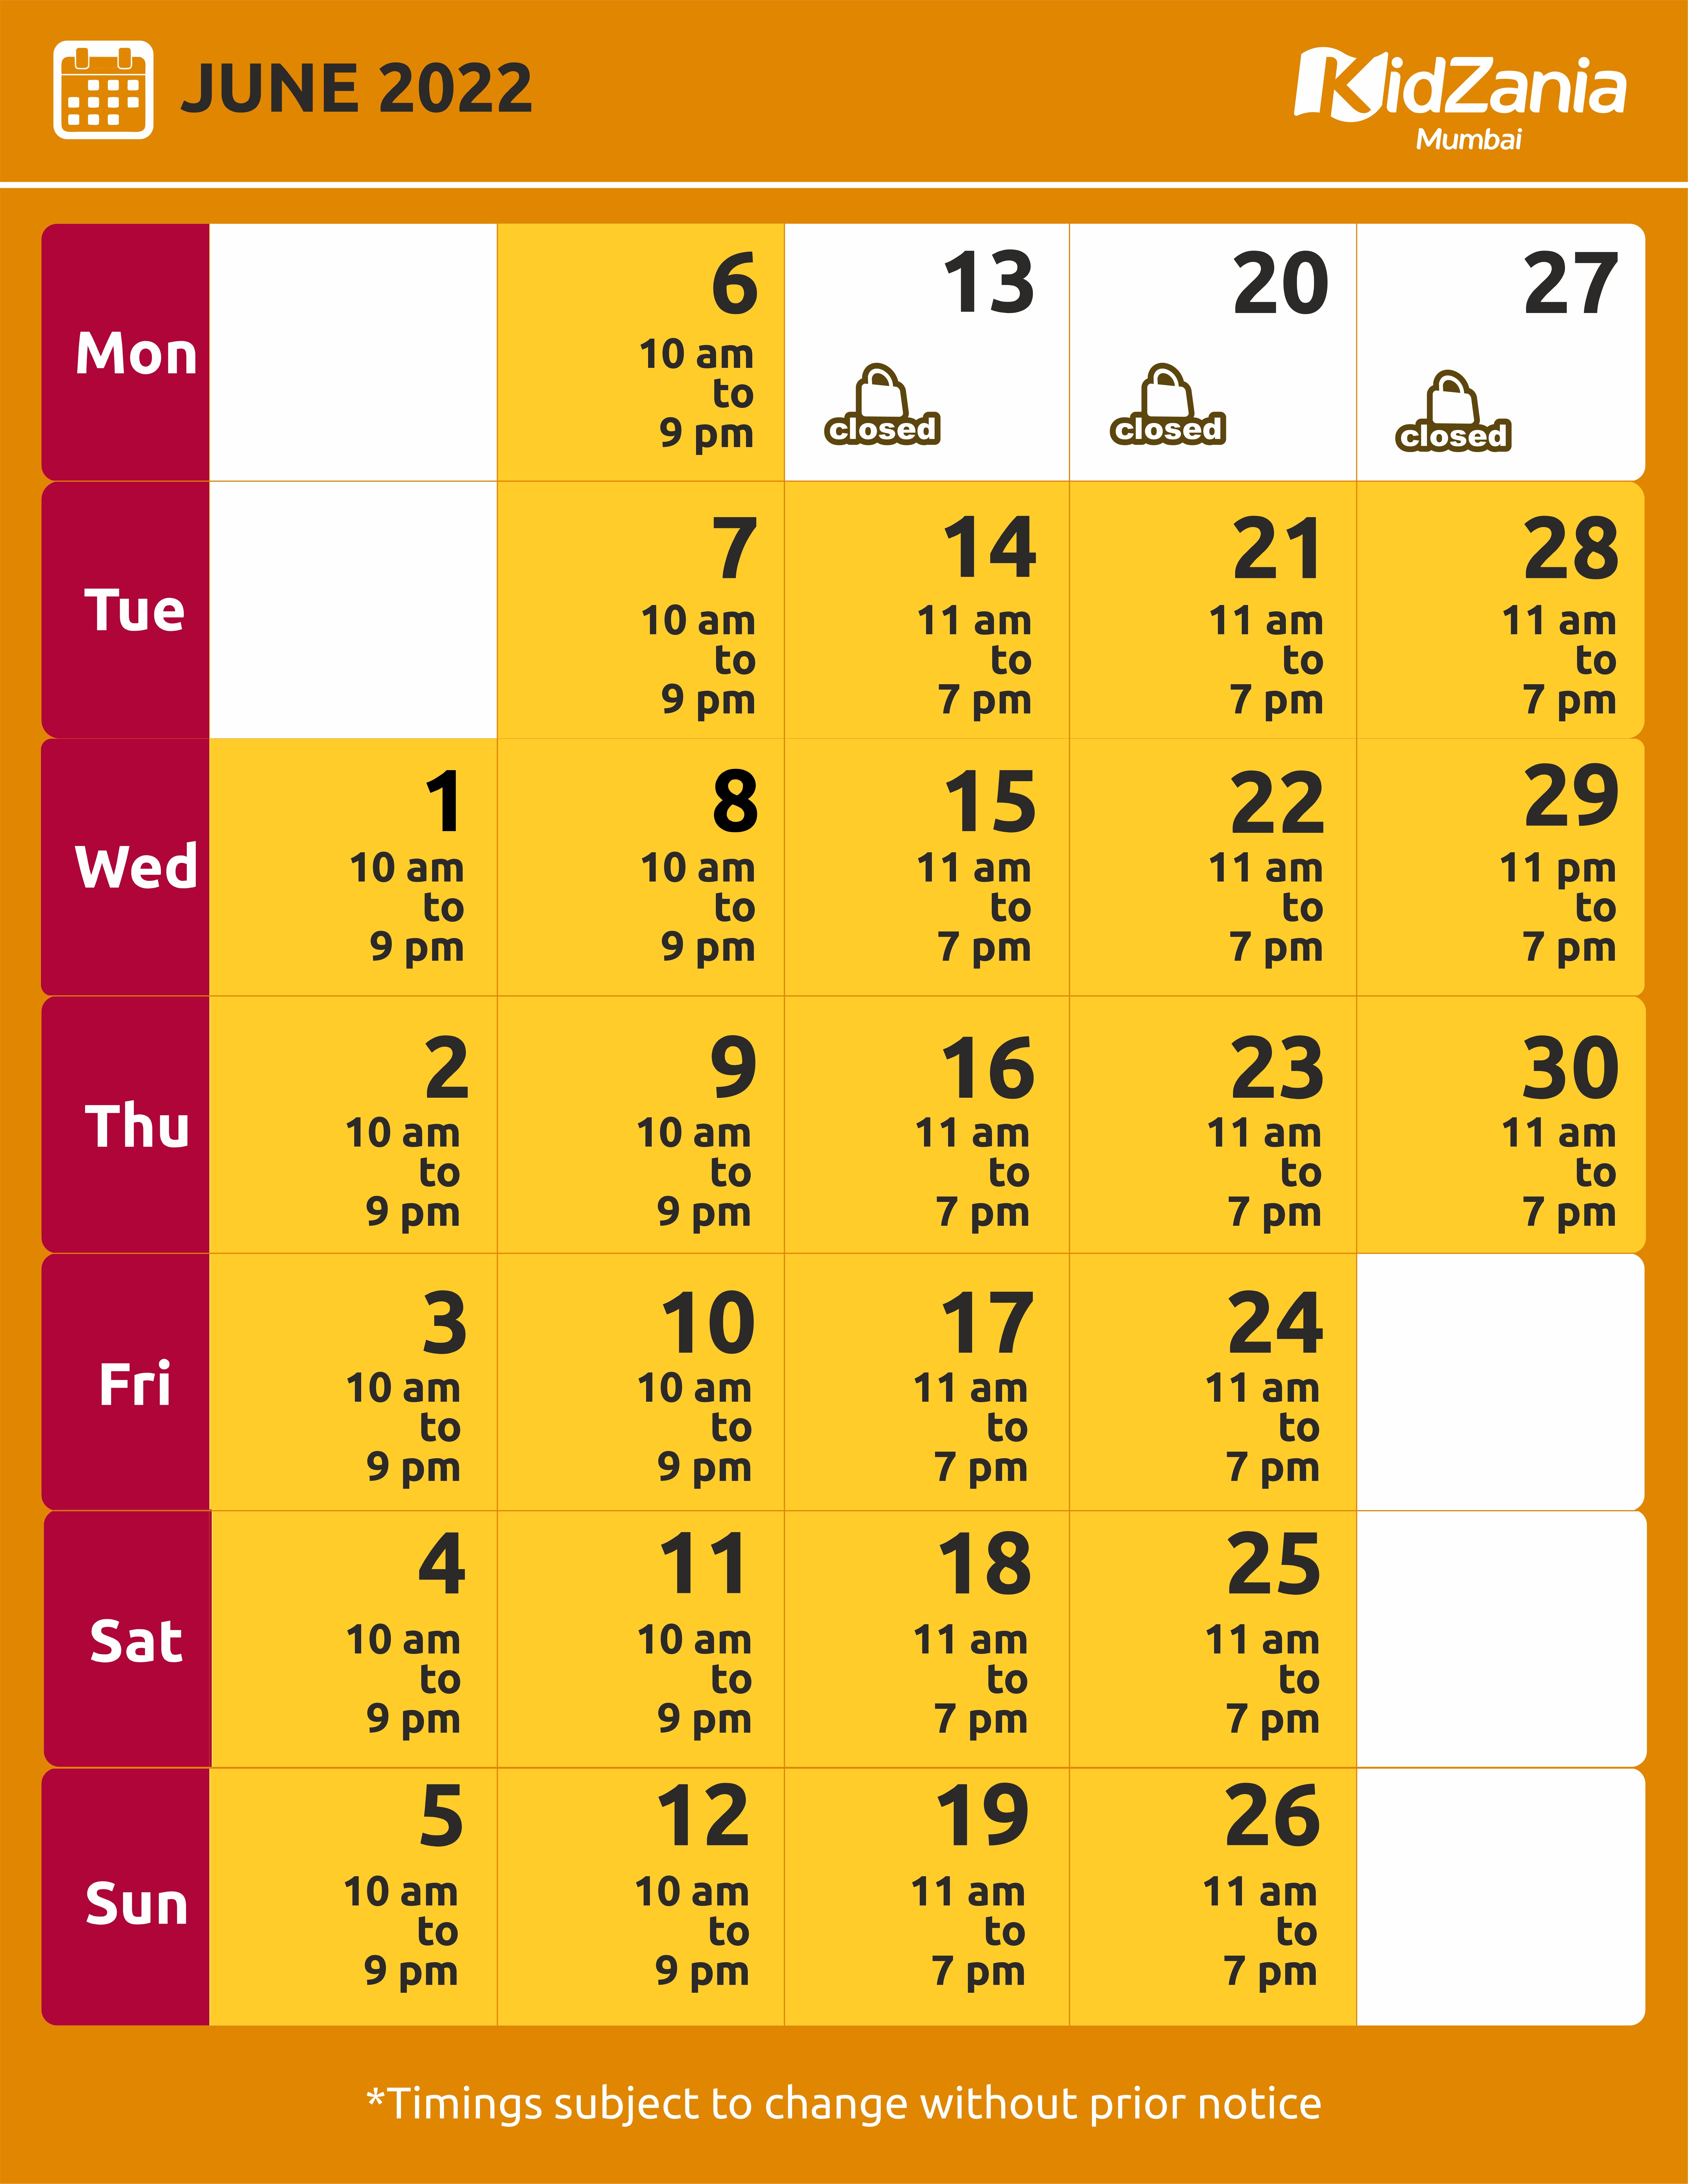 KidZania Mumbai Calendar June-22